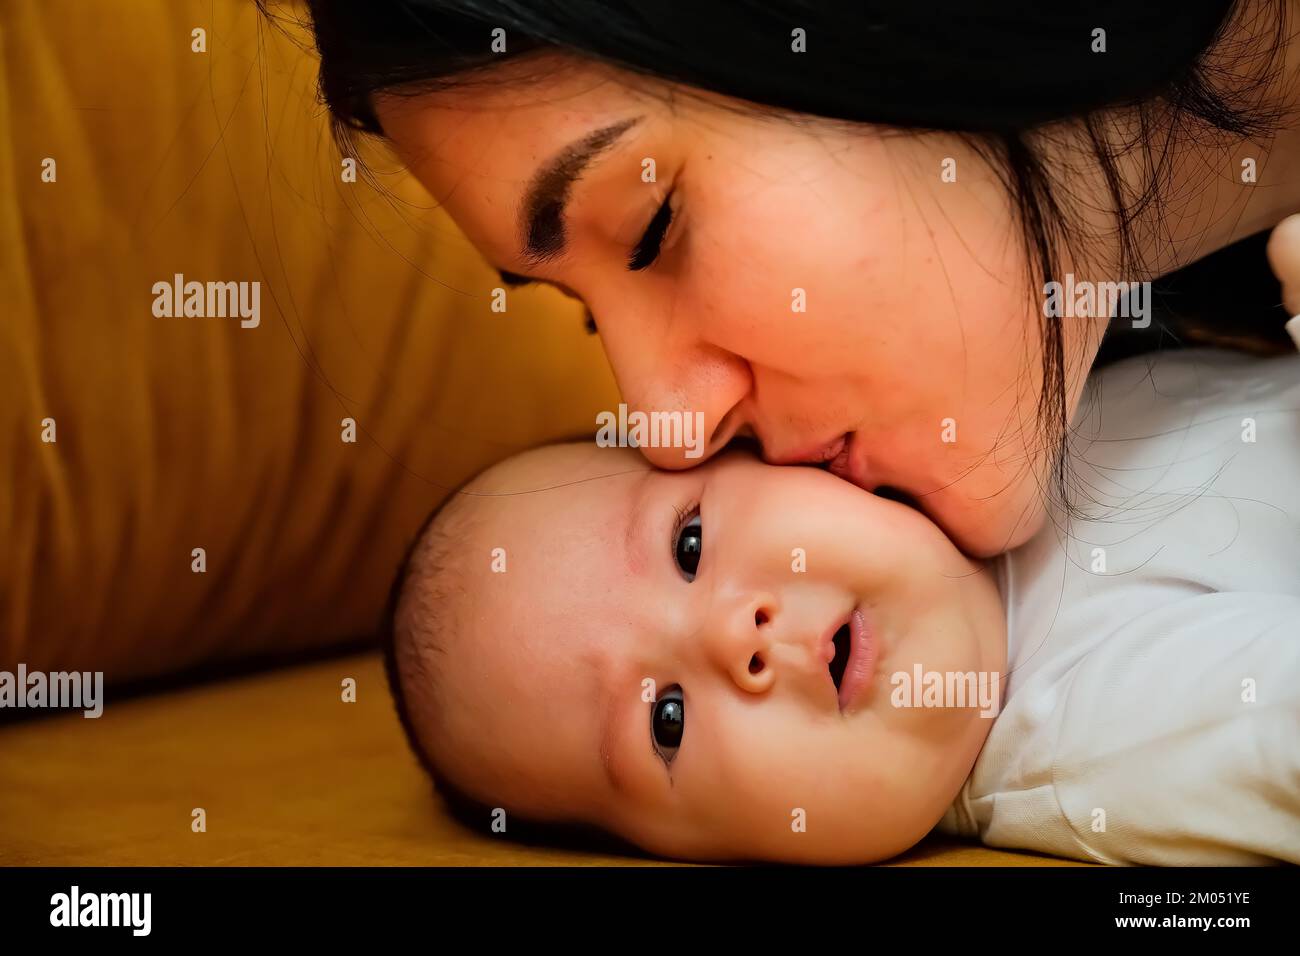 mère embrasse la joue d'un nouveau-né. le concept d'un baiser, amour maternel. Banque D'Images